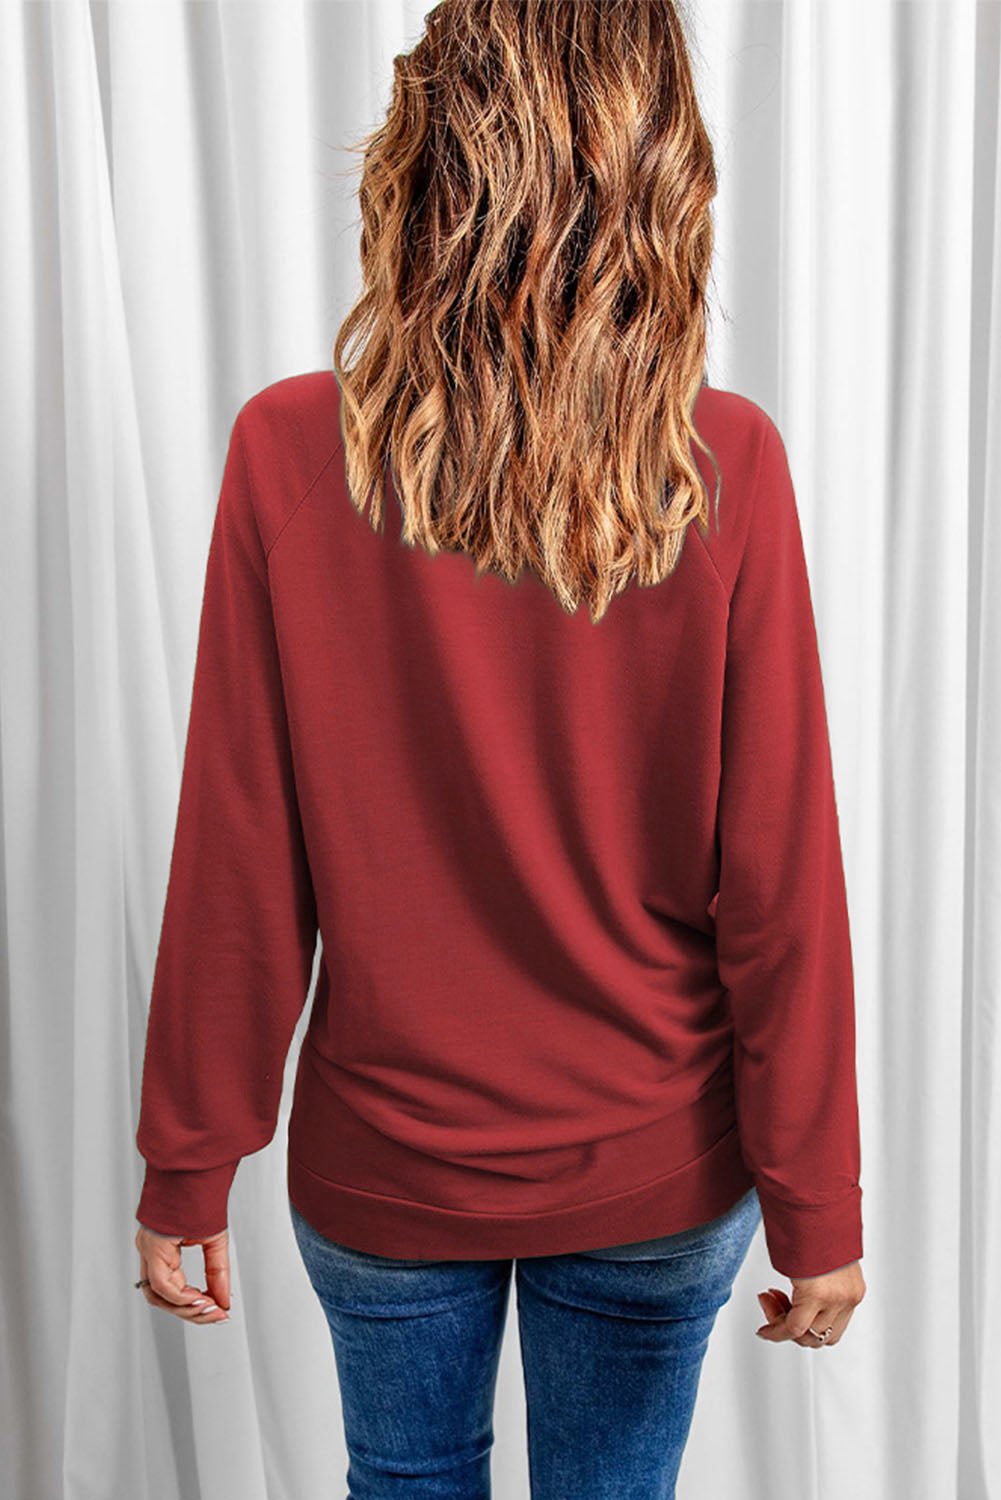 Graphic Raglan Sleeve Sweatshirt - GemThreads Boutique